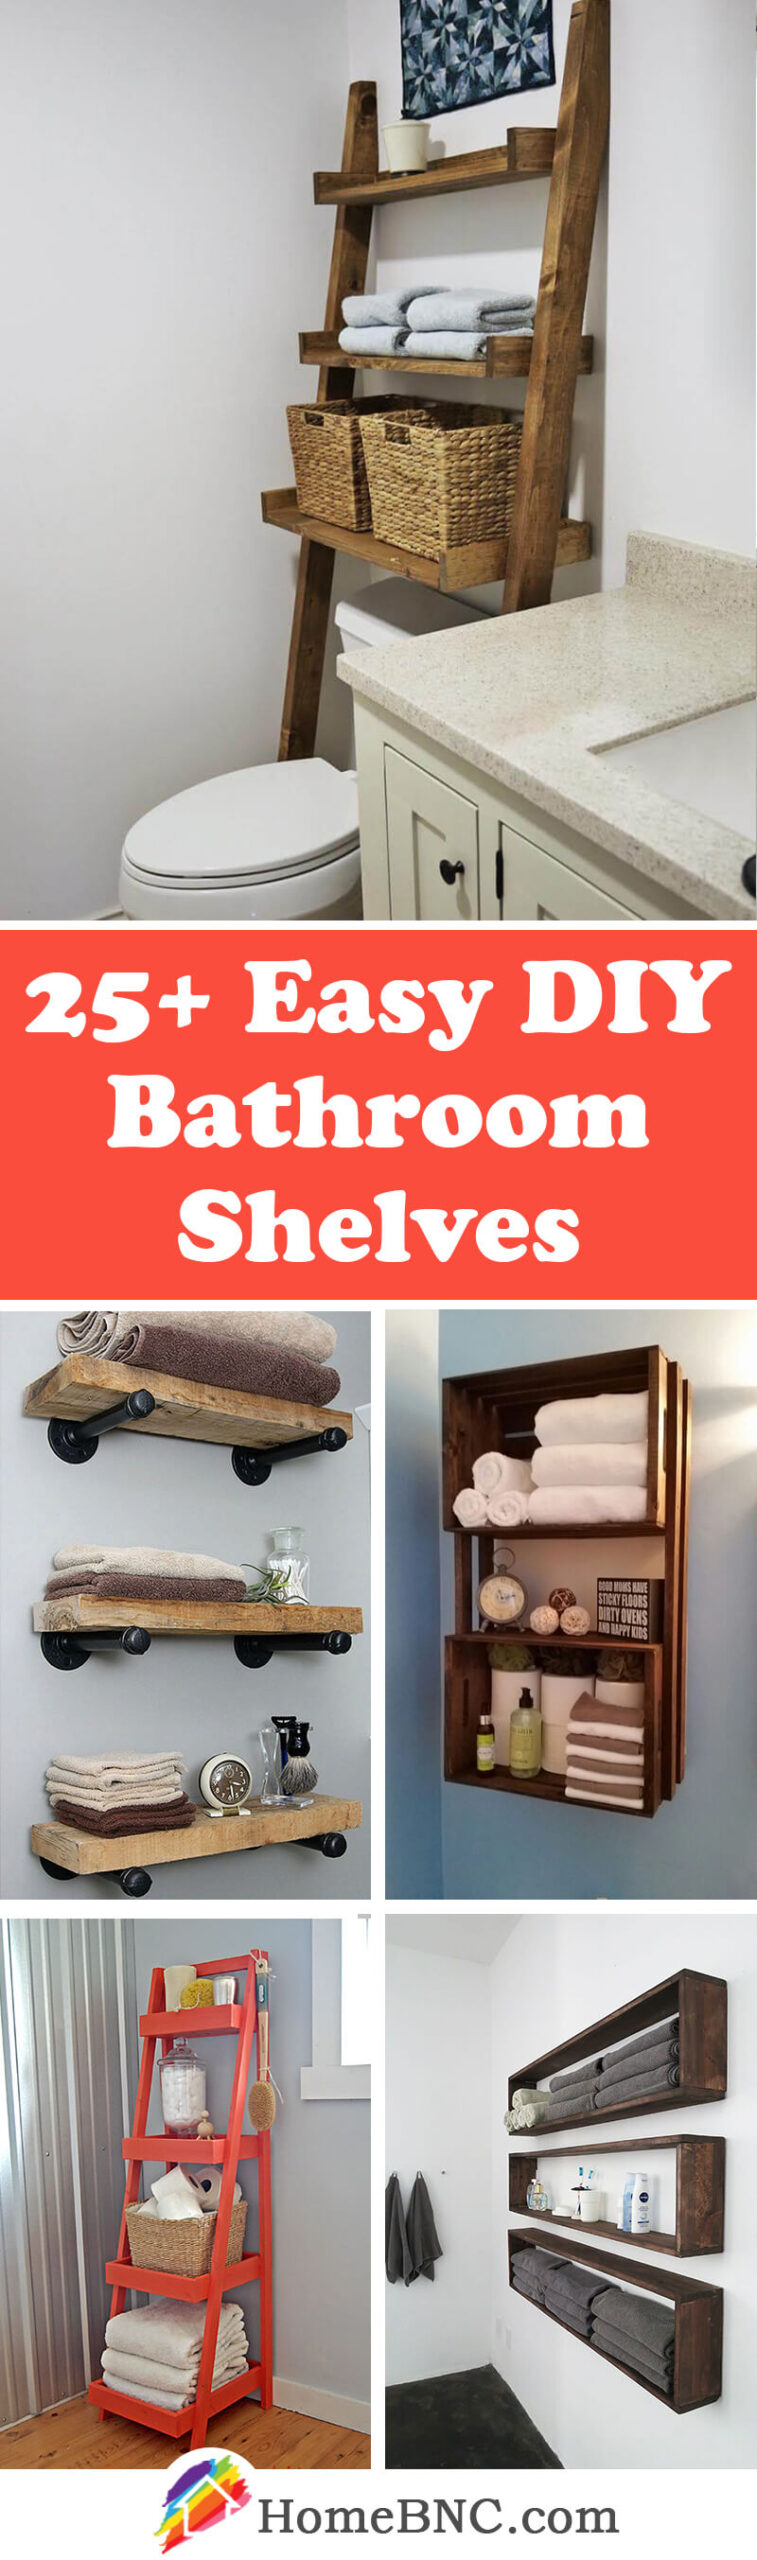 18+ Best DIY Bathroom Shelf Ideas and Designs for 18